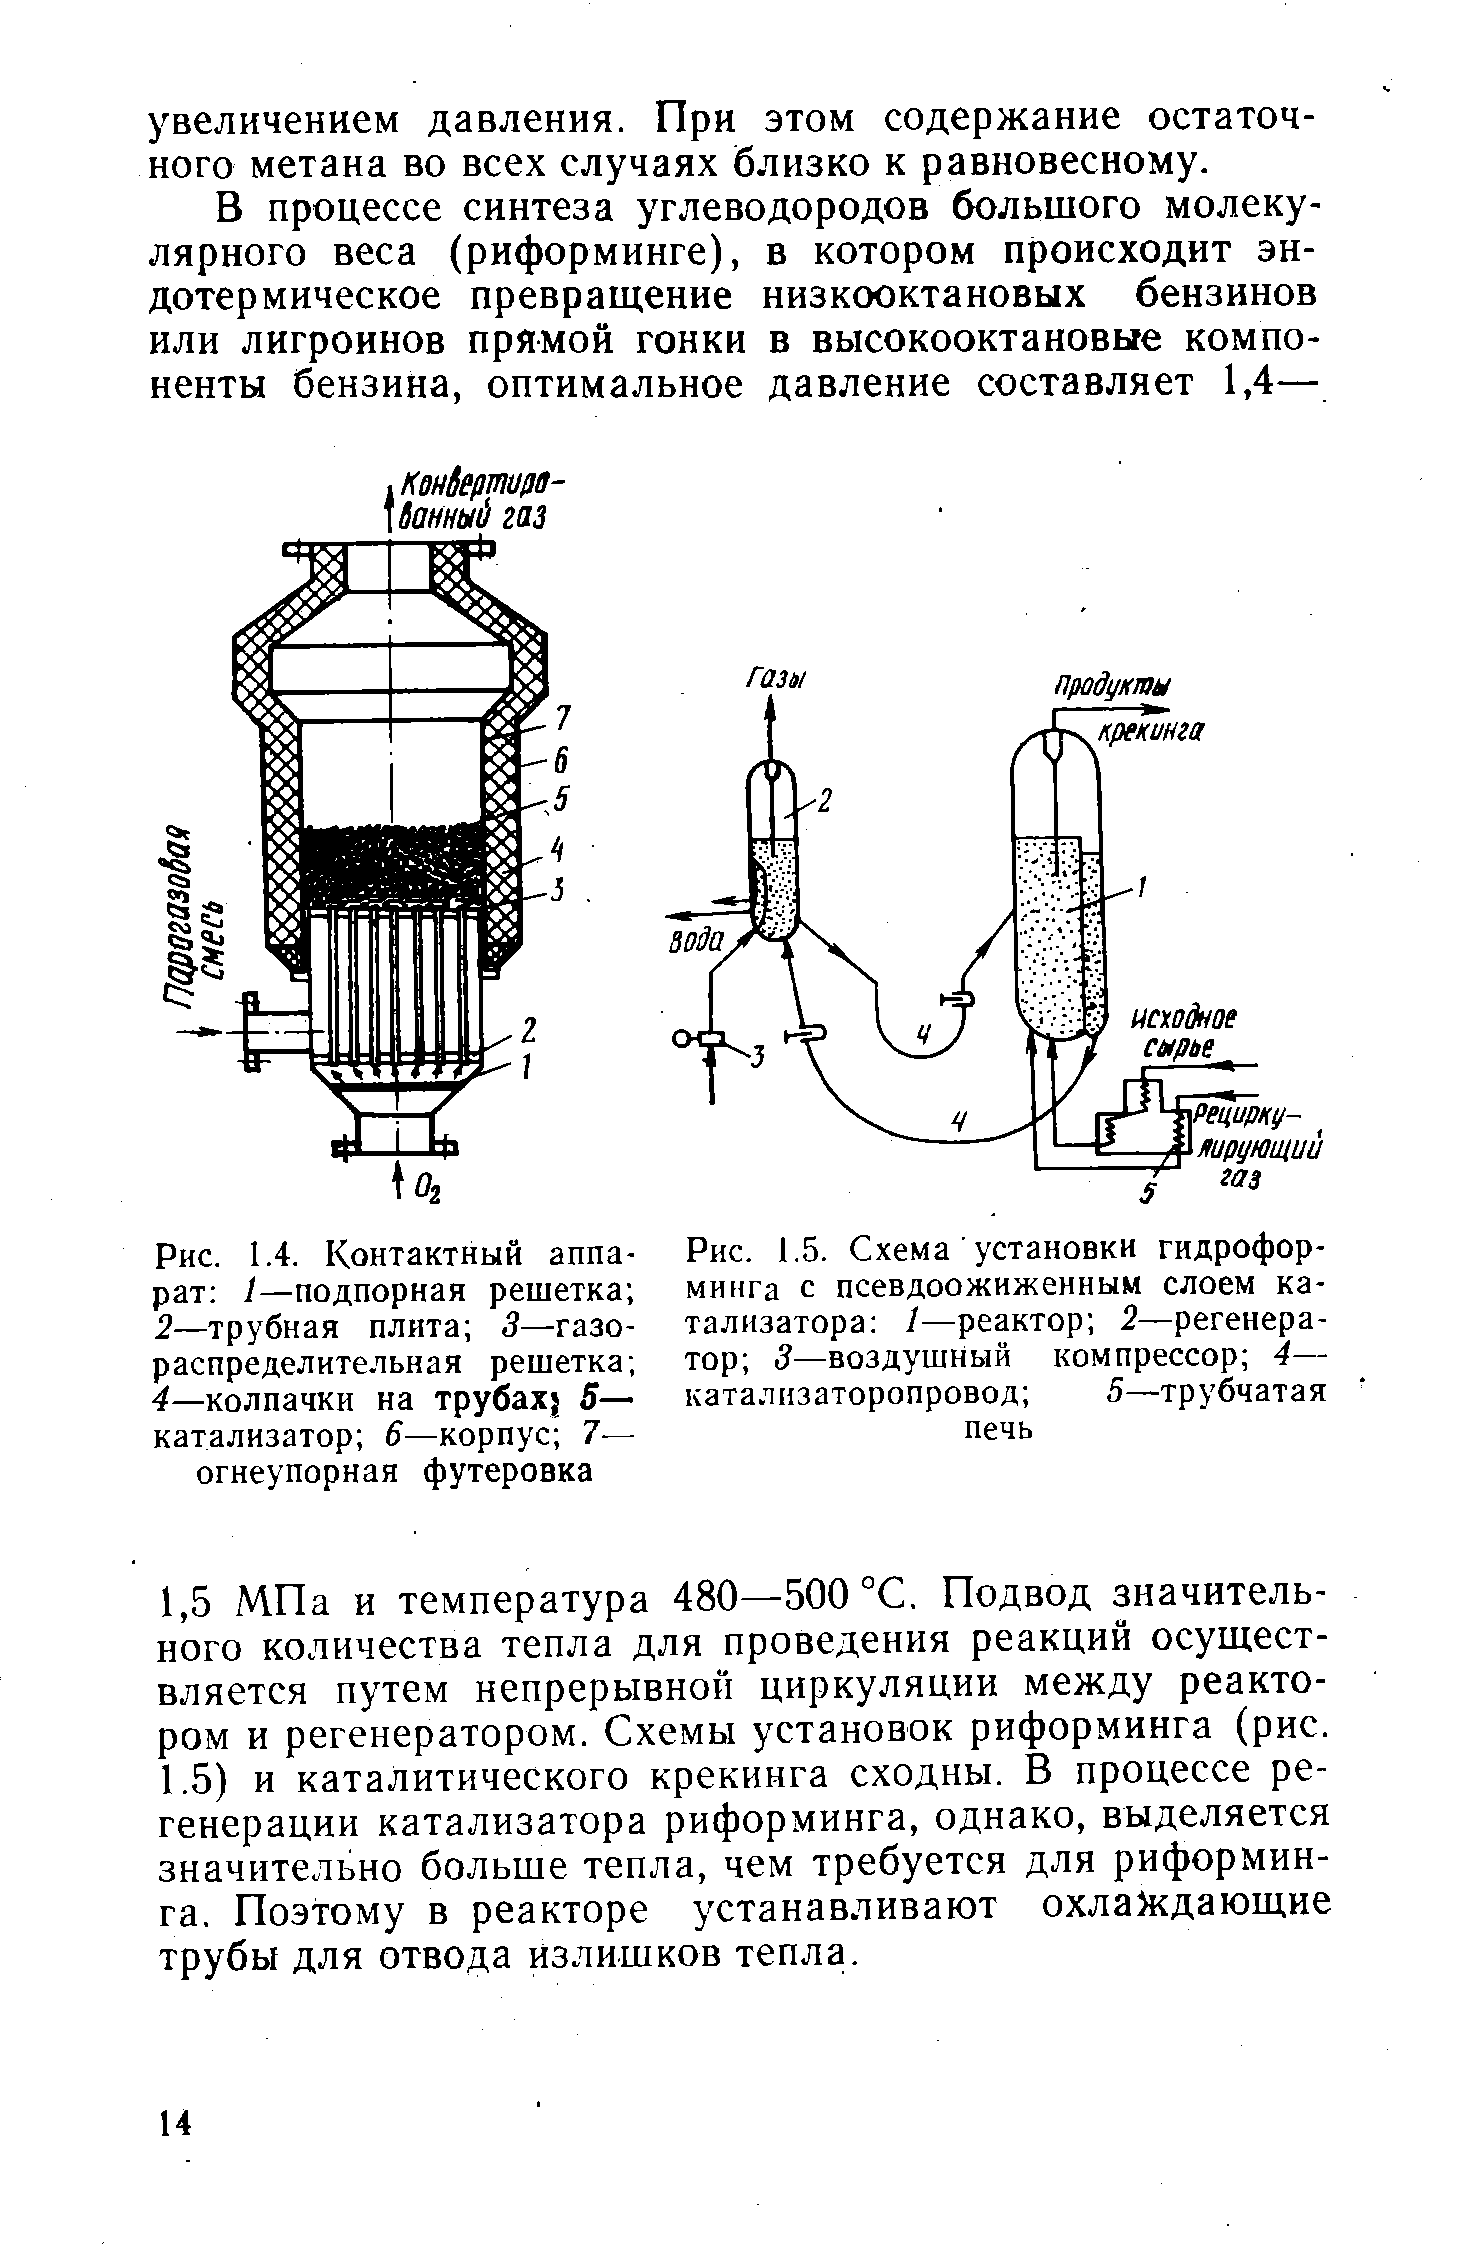 Рис. 1.5. Схема установки гидроформинга с псевдоожиженным слоем катализатора /—реактор 2—<a href="/info/18259">регенератор</a> 3—<a href="/info/106887">воздушный компрессор</a> 4— каталнзаторопровод 5—трубчатая печь
